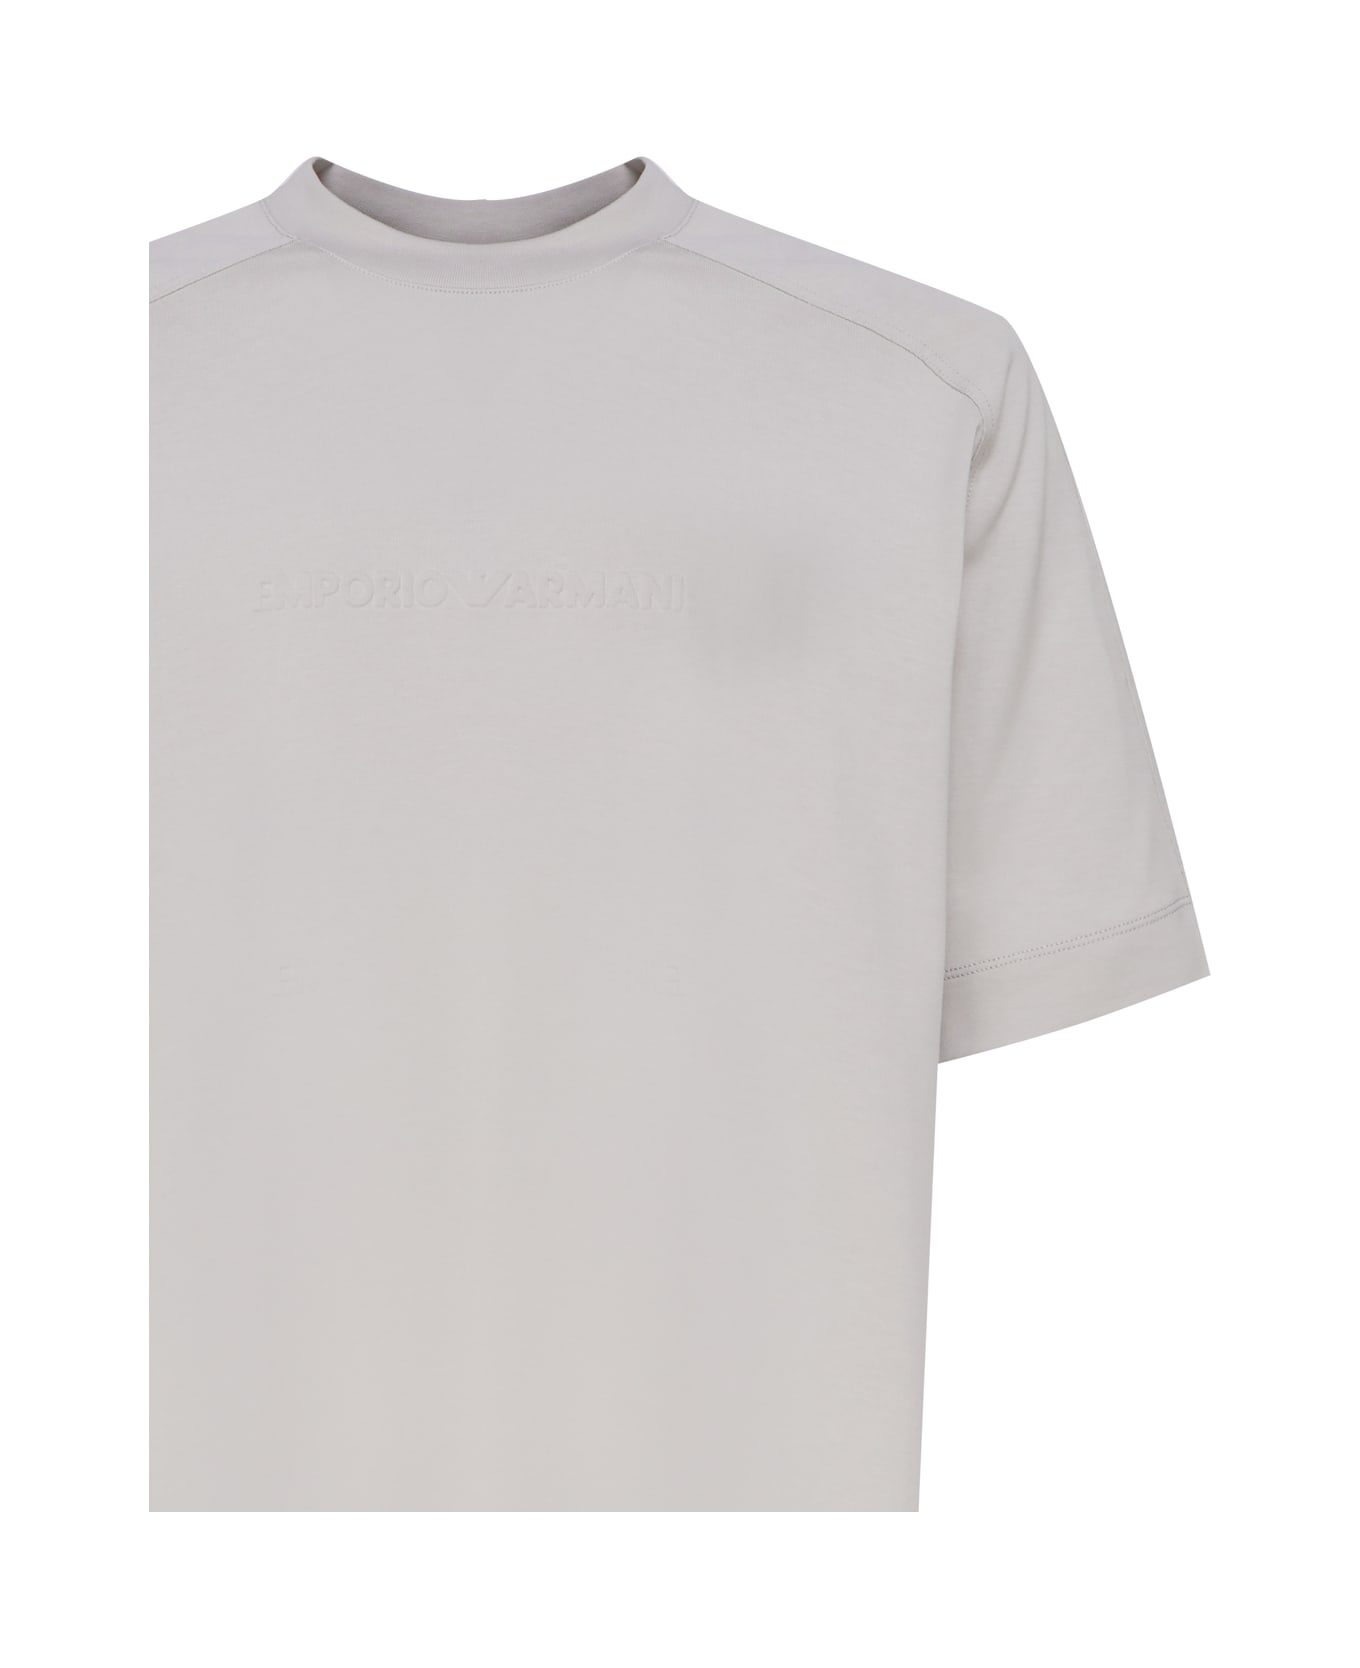 Emporio Armani T-shirt In Cotton - Silver cloud シャツ